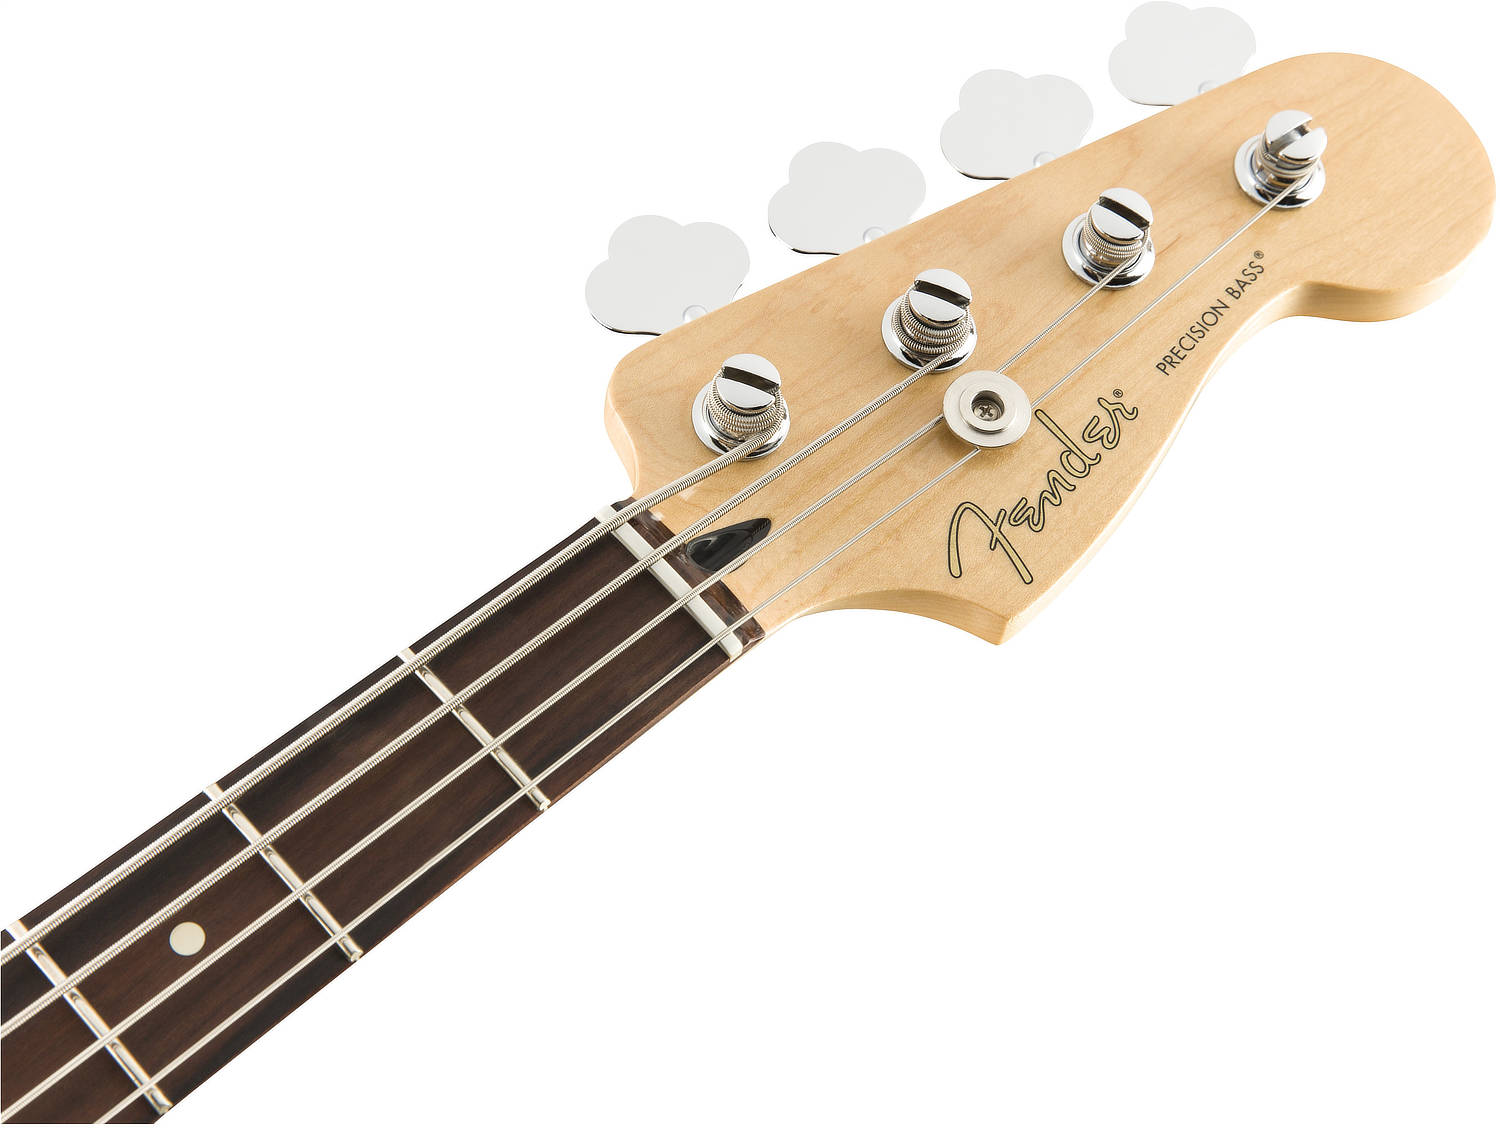 Fender Player Precision Bass Guitar